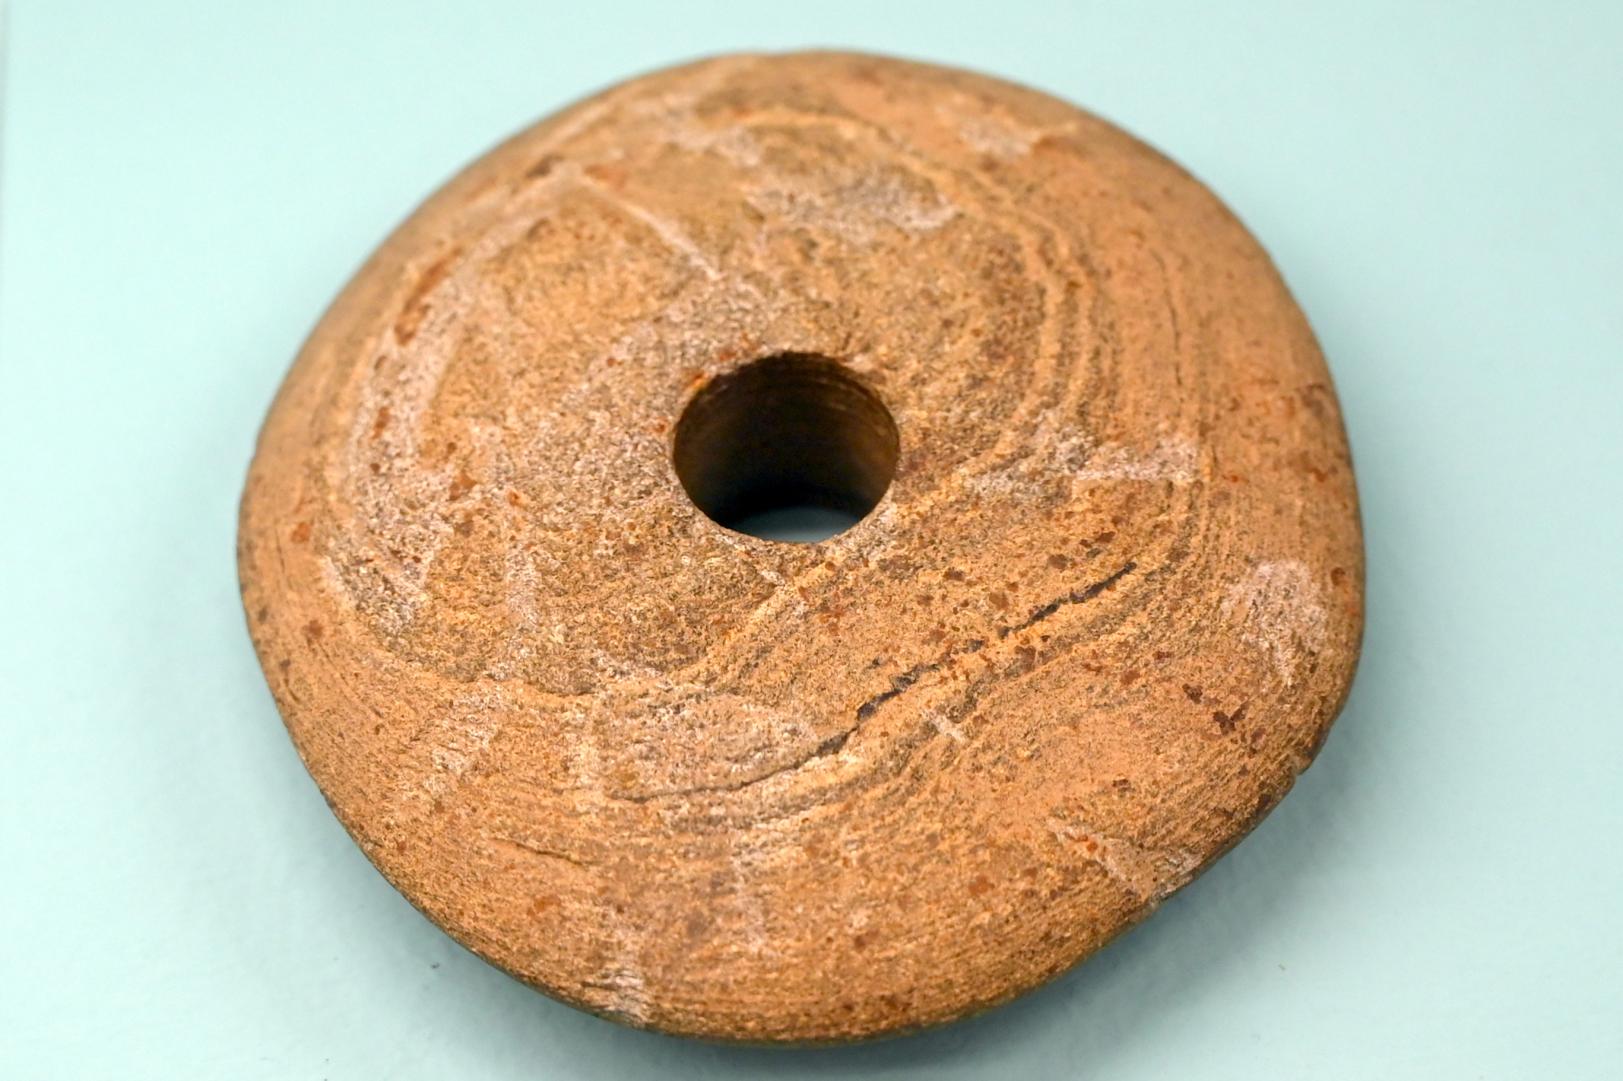 Scheibenkeule, Neolithikum (Jungsteinzeit), 5500 - 1700 v. Chr., 5300 - 4950 v. Chr., Bild 1/2